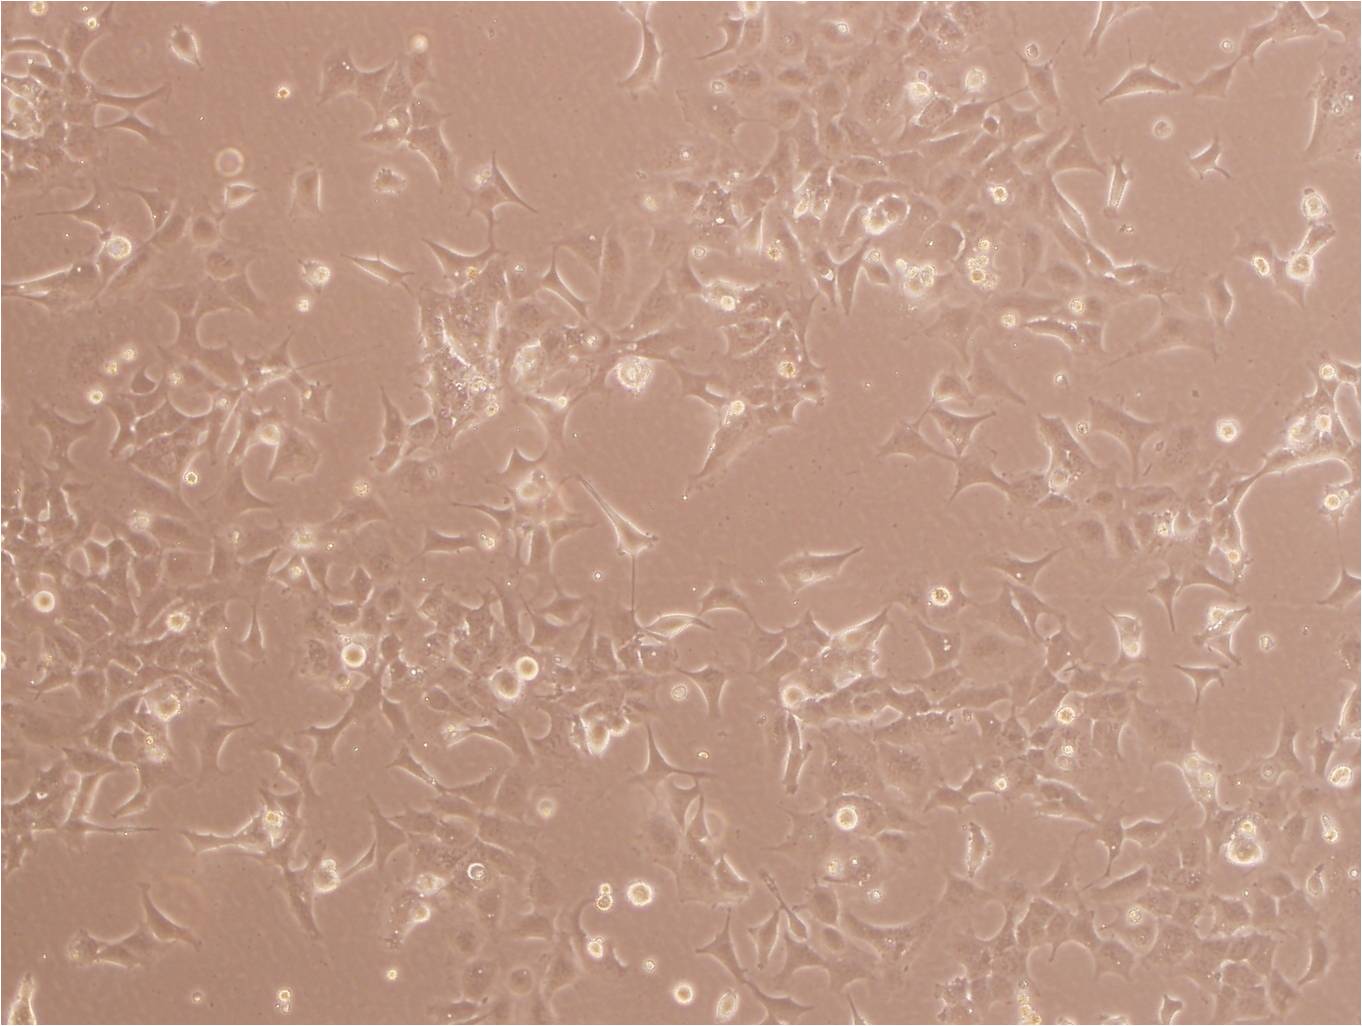 MV4-11 Cells(赠送Str鉴定报告)|人急性单核细胞